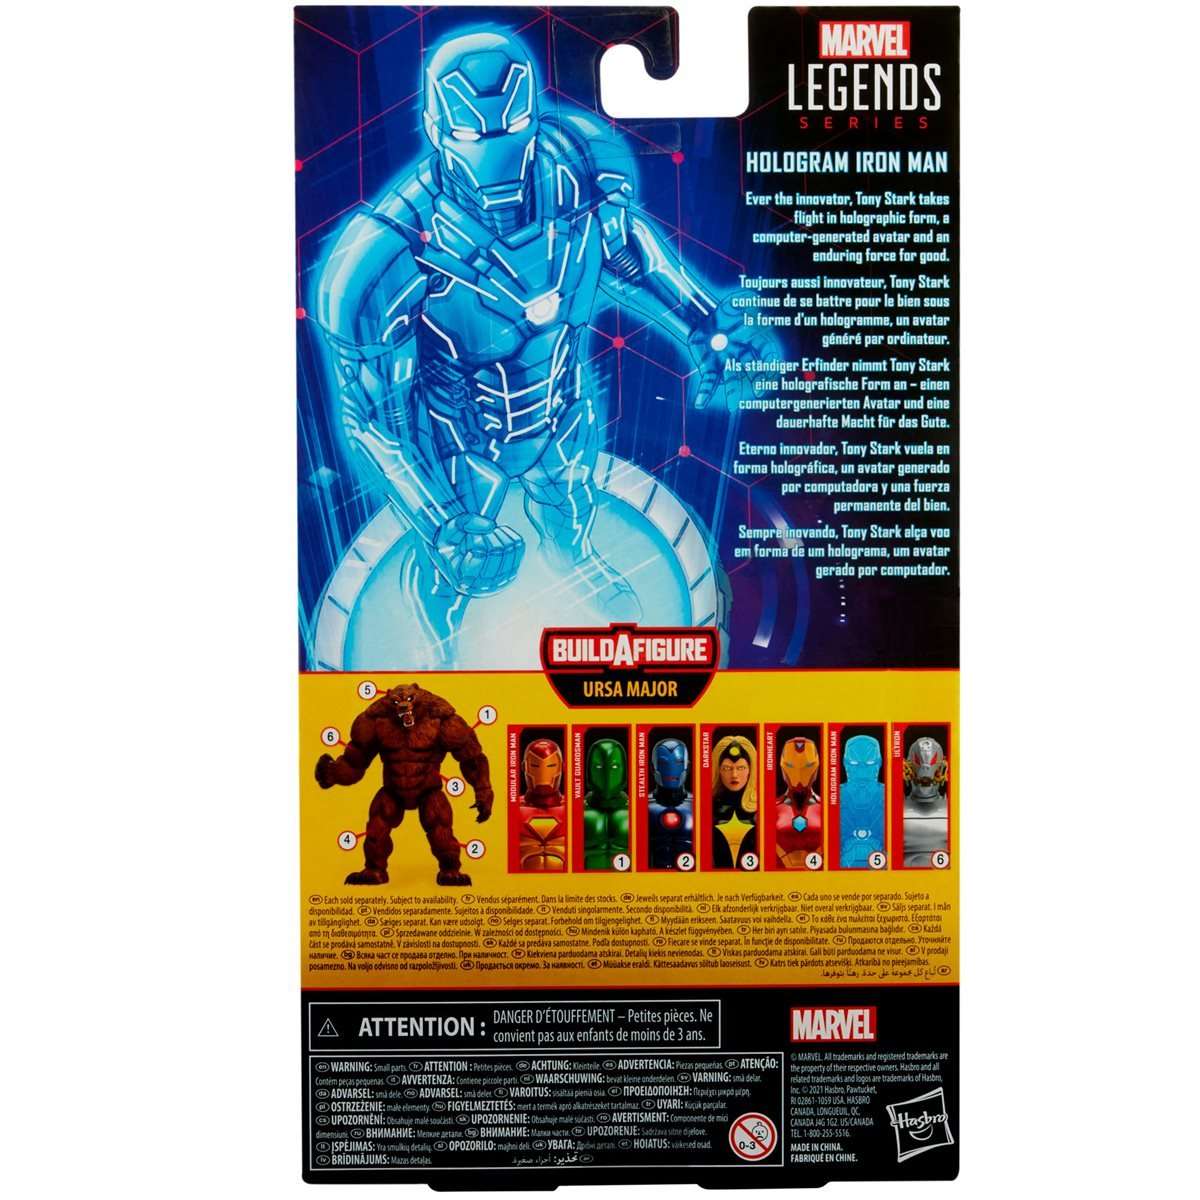 Marvel Legends Ursa Major build a figure wave Comic Hologram Iron Man  6-inch figure packaging back